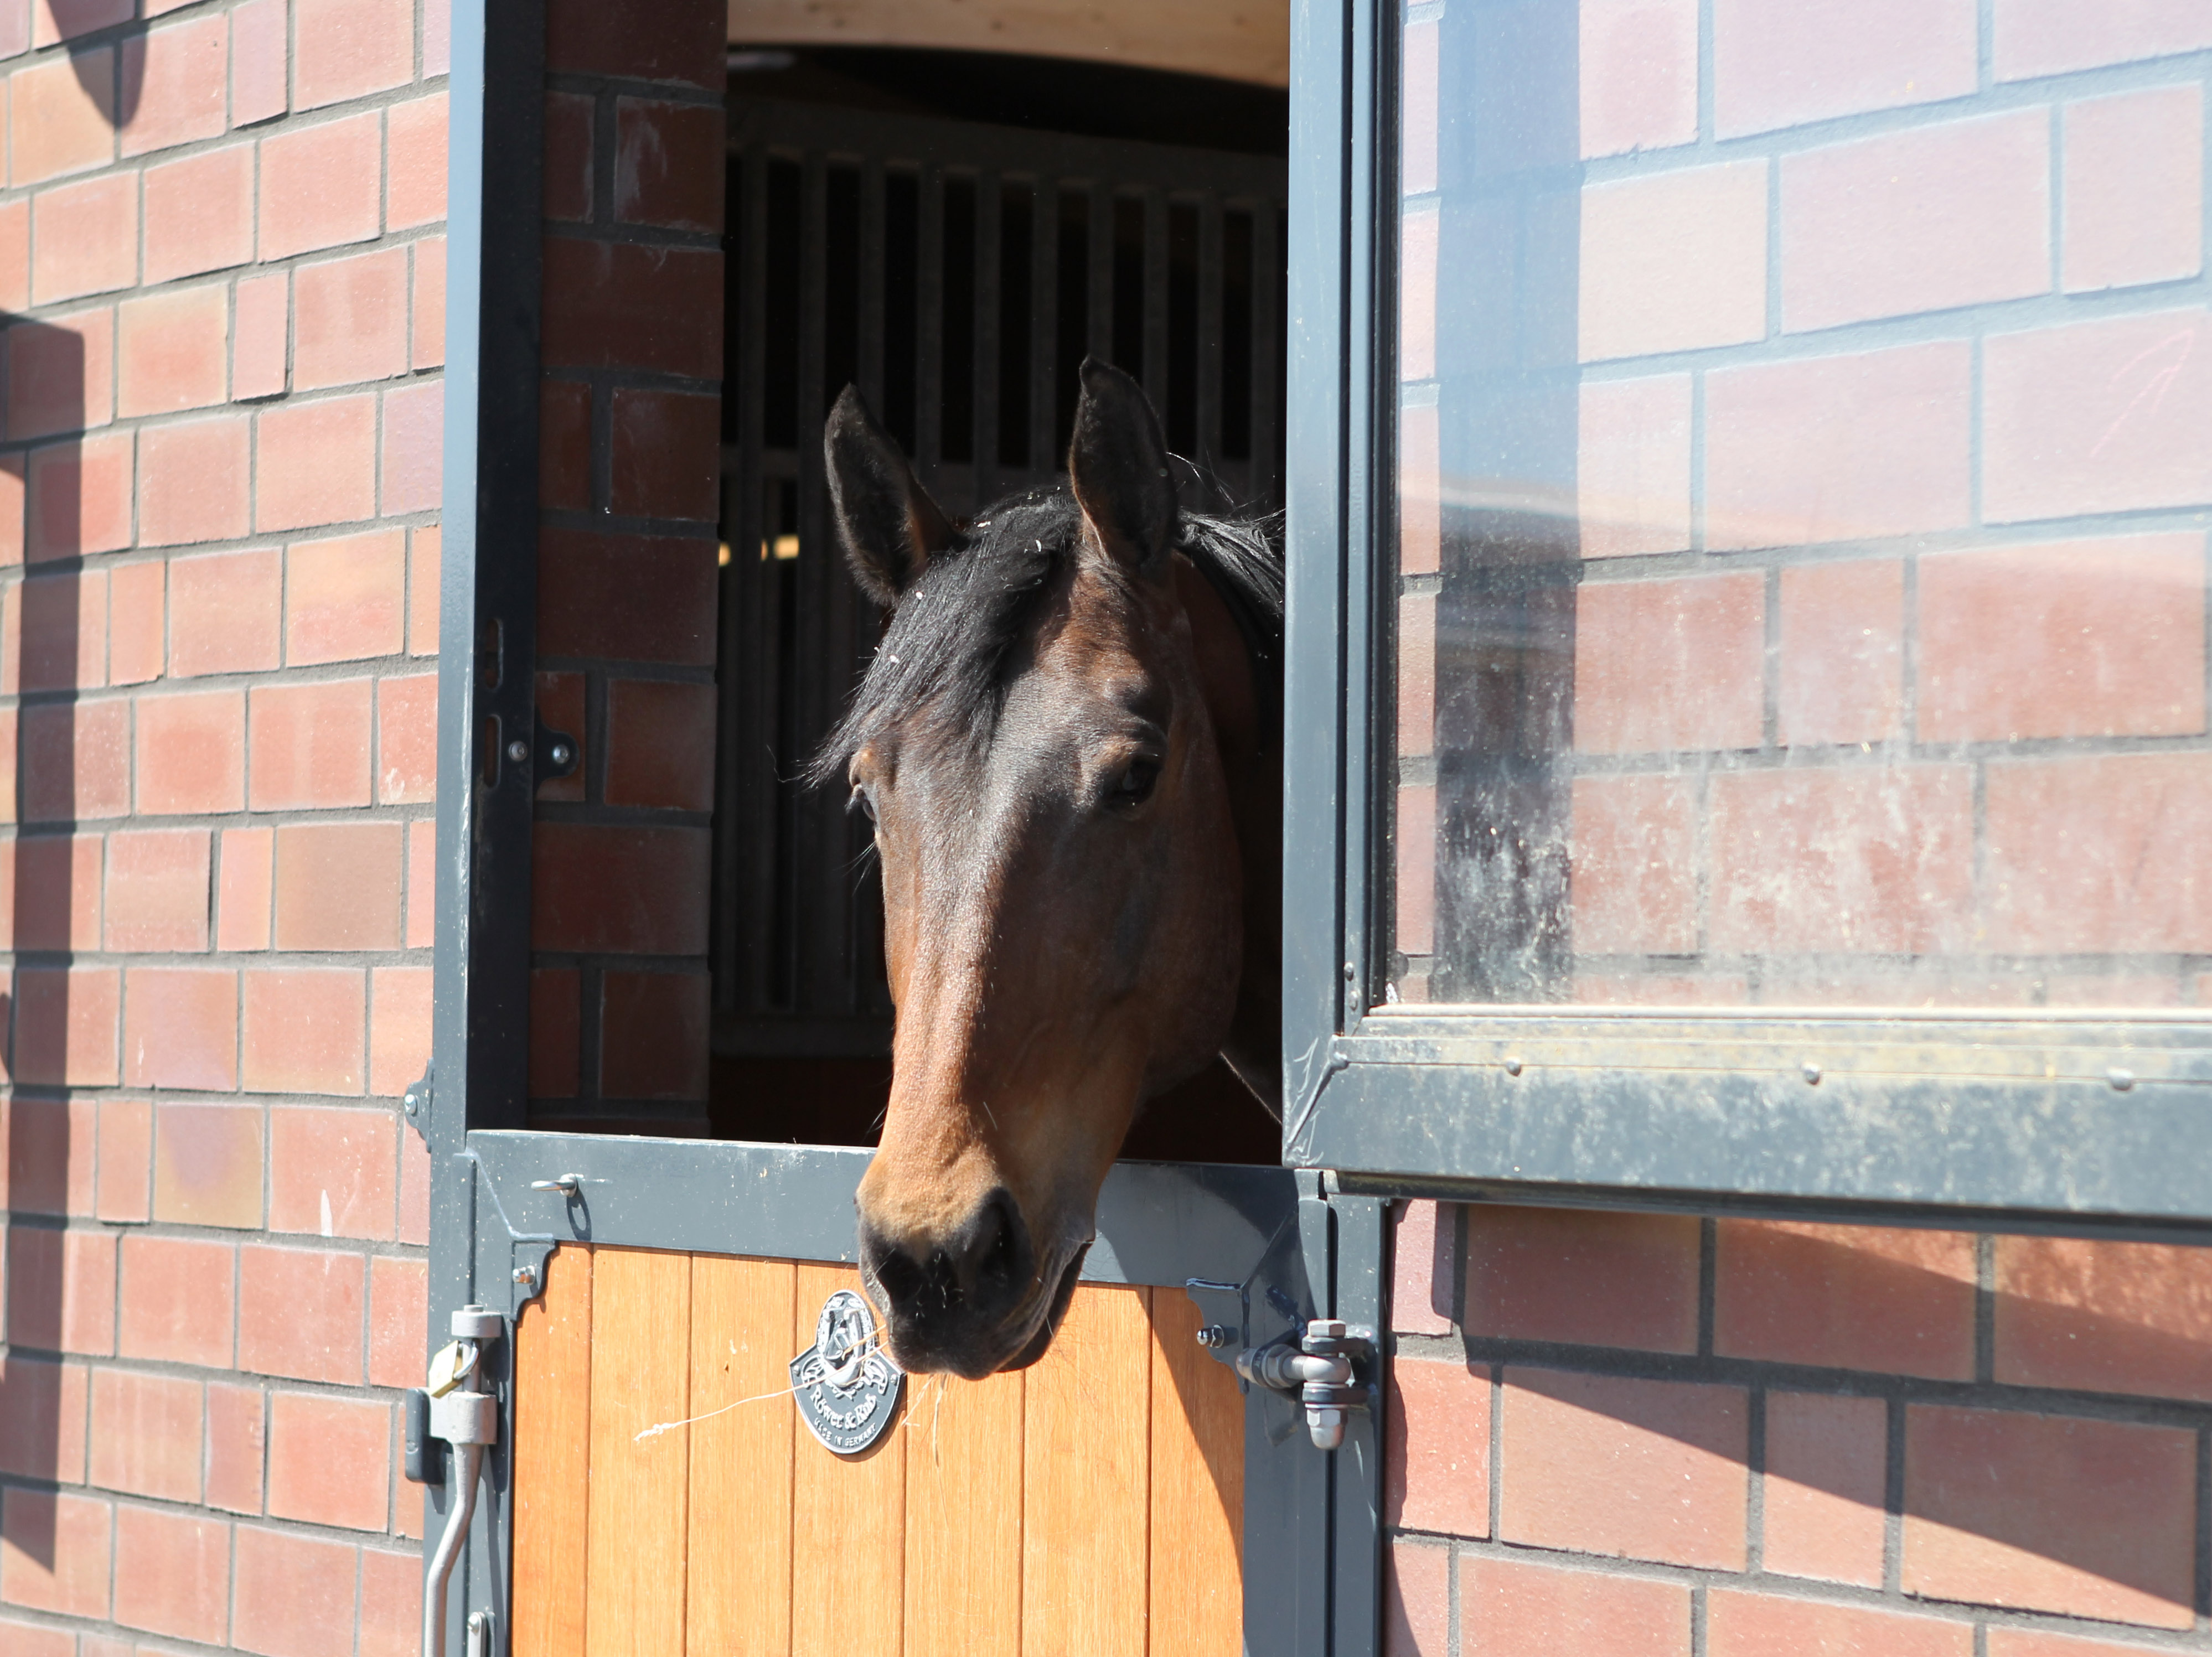 Die Pferde stehen in großräumigen Boxen. Beide Ställe sind mit zweigeteilten Außentüren/Fenstern versehen, die den Pferden einen Blick nach draußen ermöglichen. © Jutta Wego